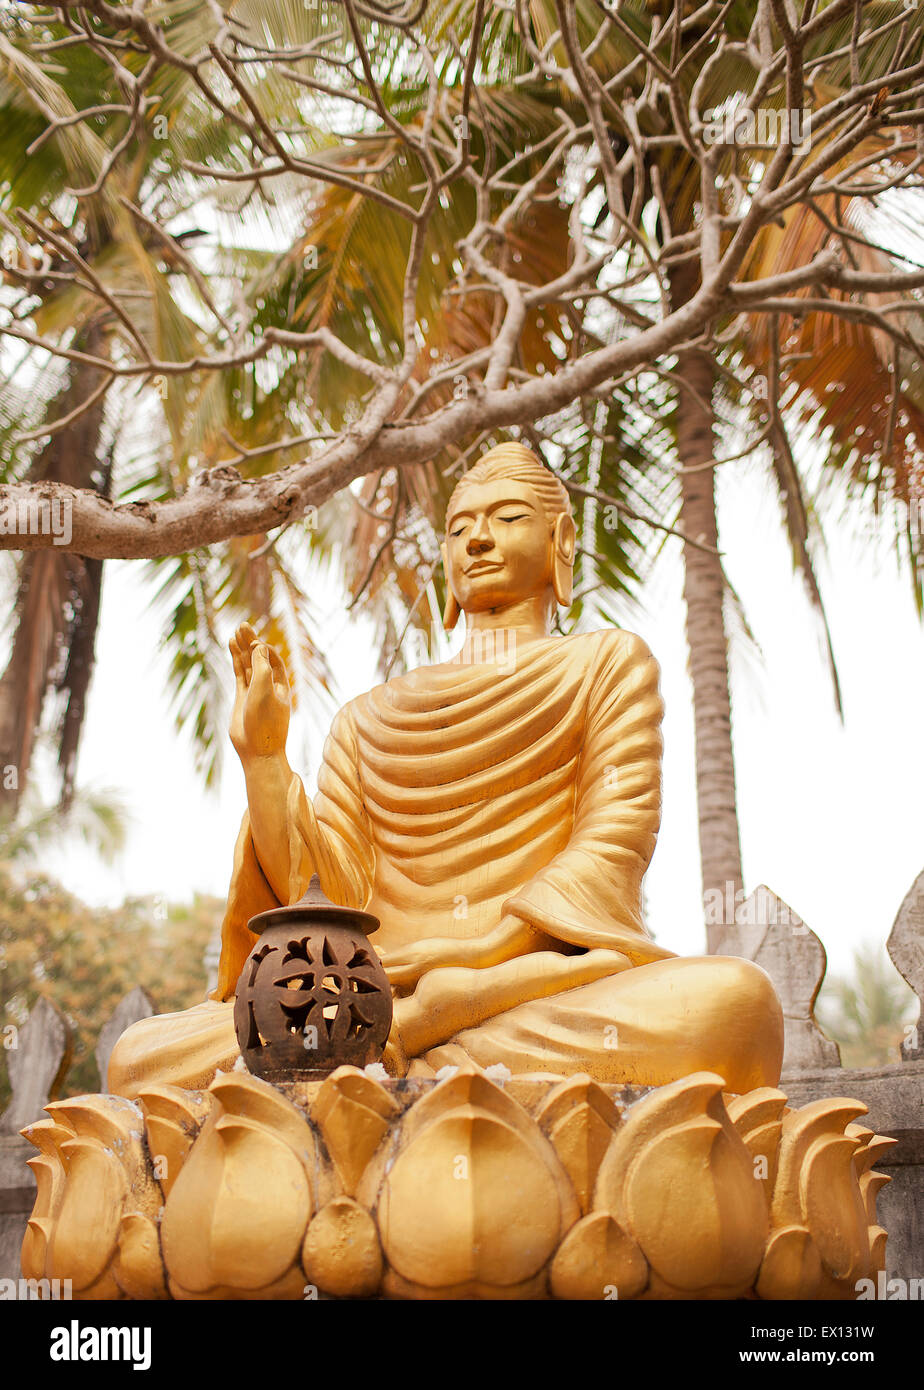 Un giardino di Buddha all'interno di Wat Choumkhong. I Buddha mostrano alcune delle 7 posizioni del Buddha.Luang Prabang,Laos Foto Stock